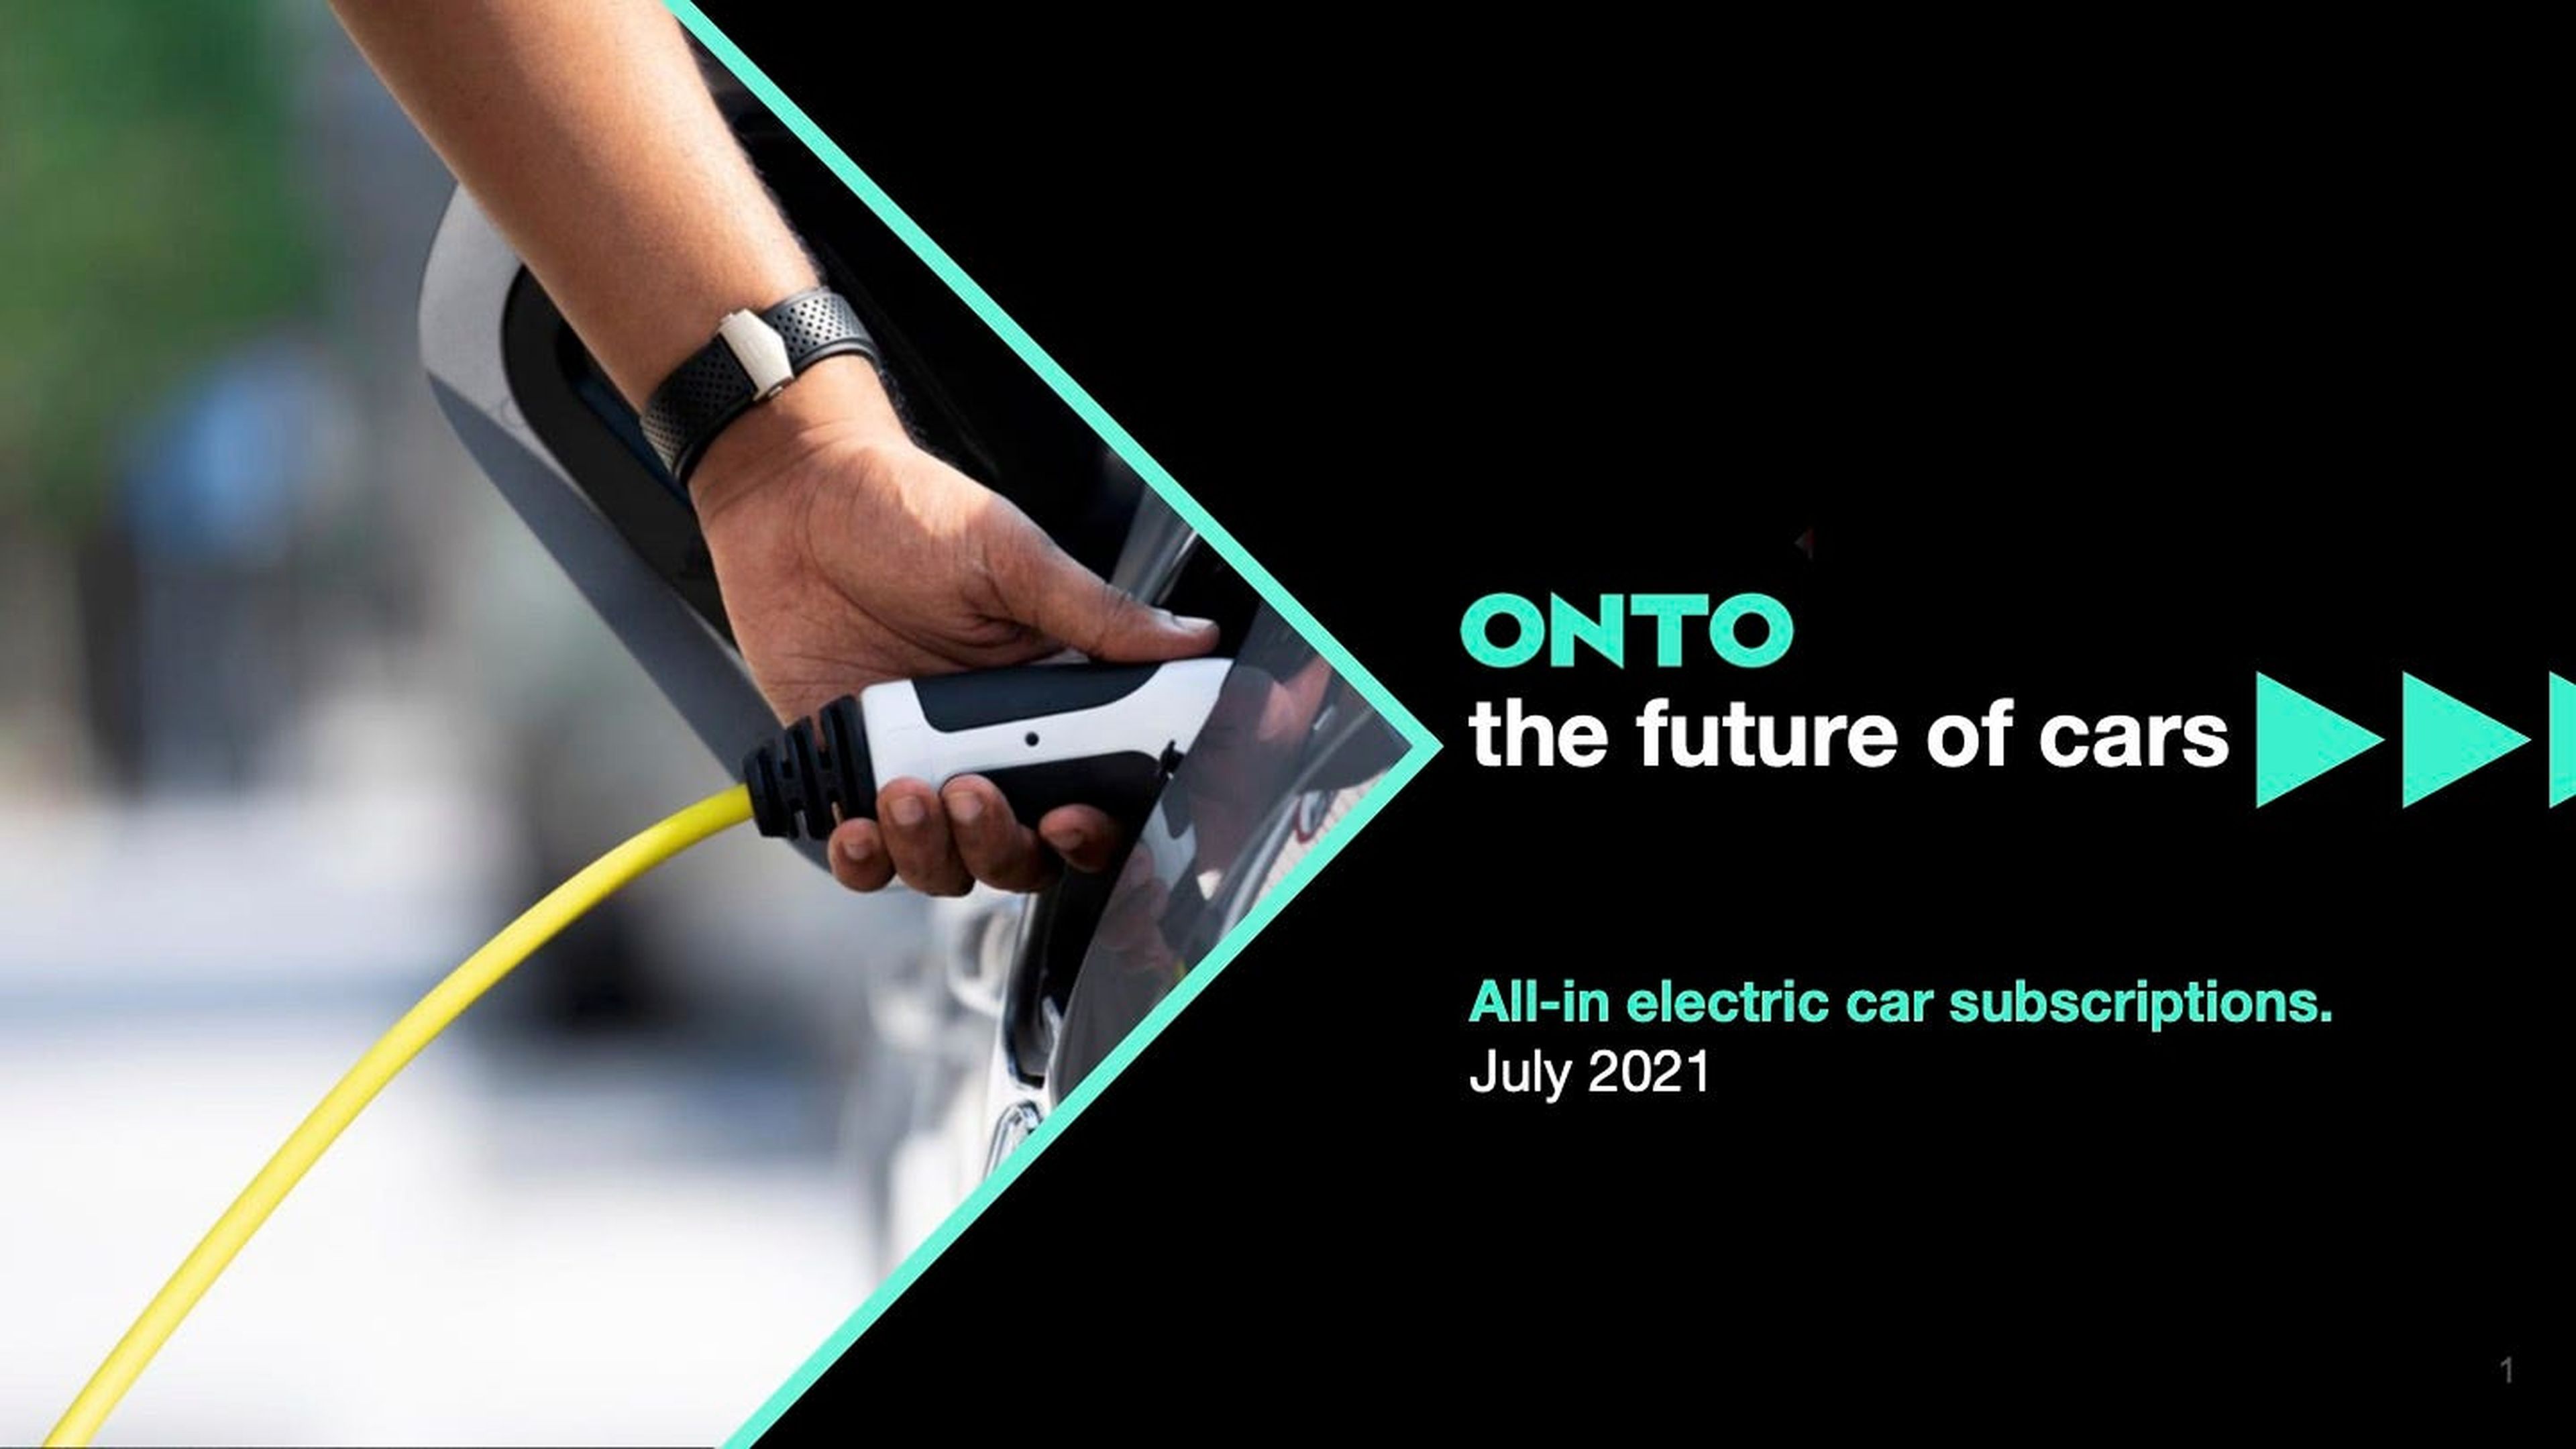 Presentación del modelo de negocio de Onto realizada en julio de 2021.